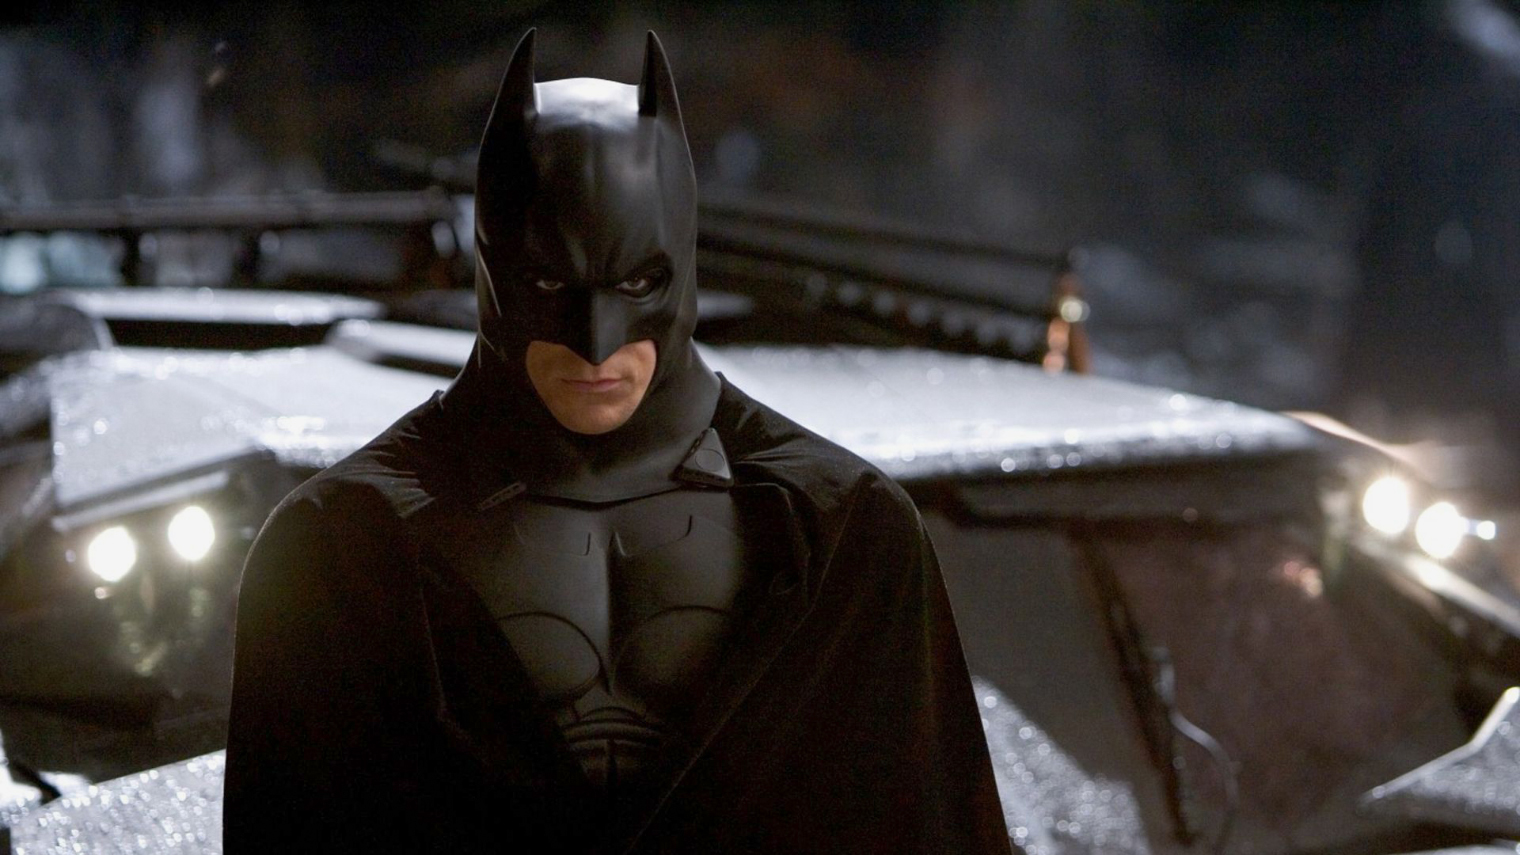 Бэтмена в этом фильме впервые сыграл Кристиан Бейл. На тот момент его не рассматривали как актера в блокбастерах. Источник: Warner Bros.